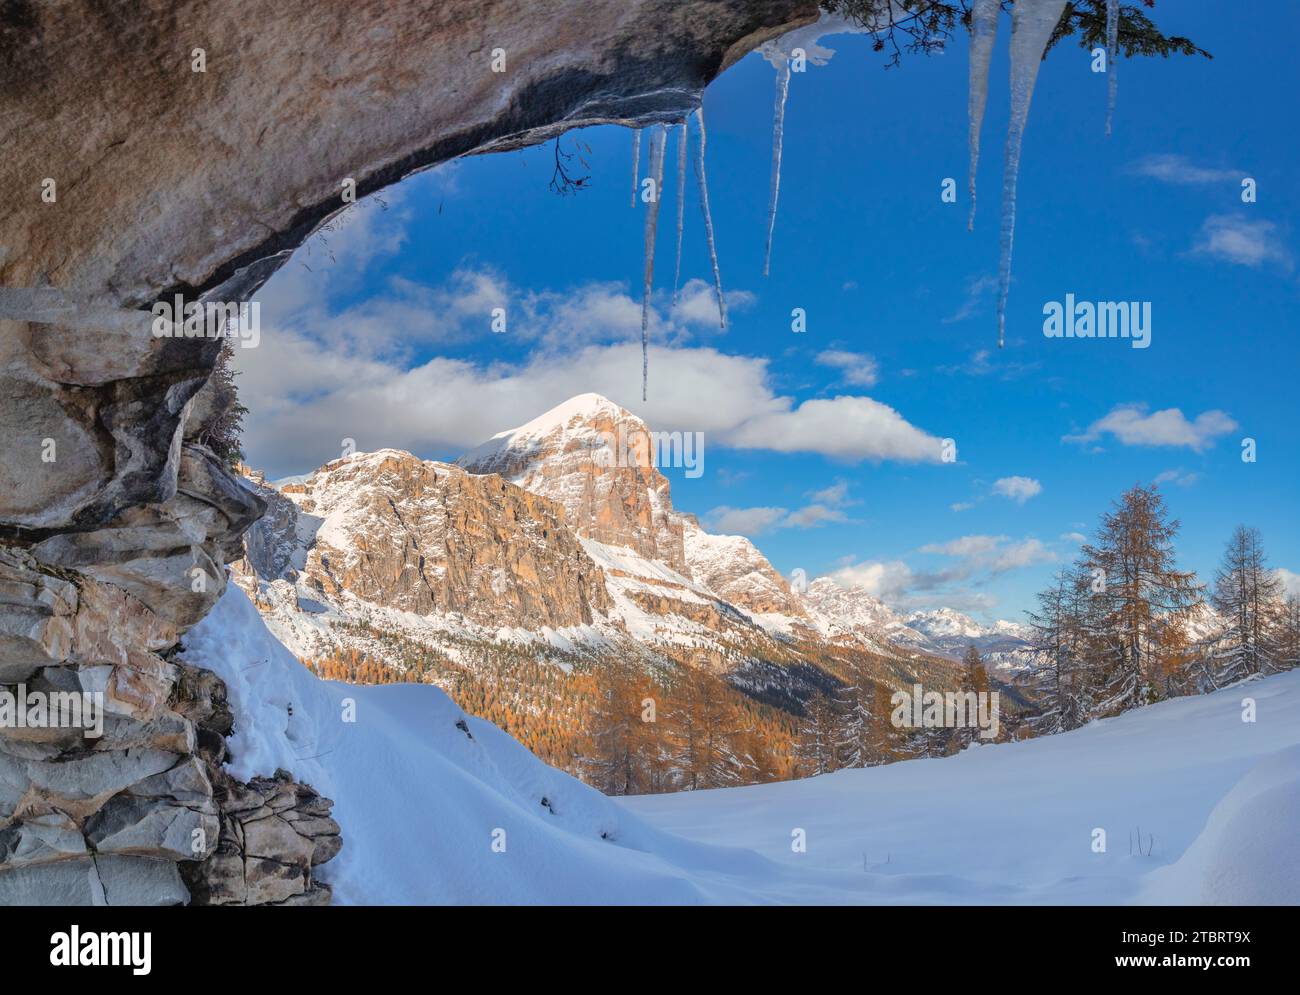 Italia, Veneto, provincia di Belluno, vista invernale della Tofana di Rozes da una grotta rocciosa con i ghiaccioli appesi dall'alto, Dolomiti Foto Stock